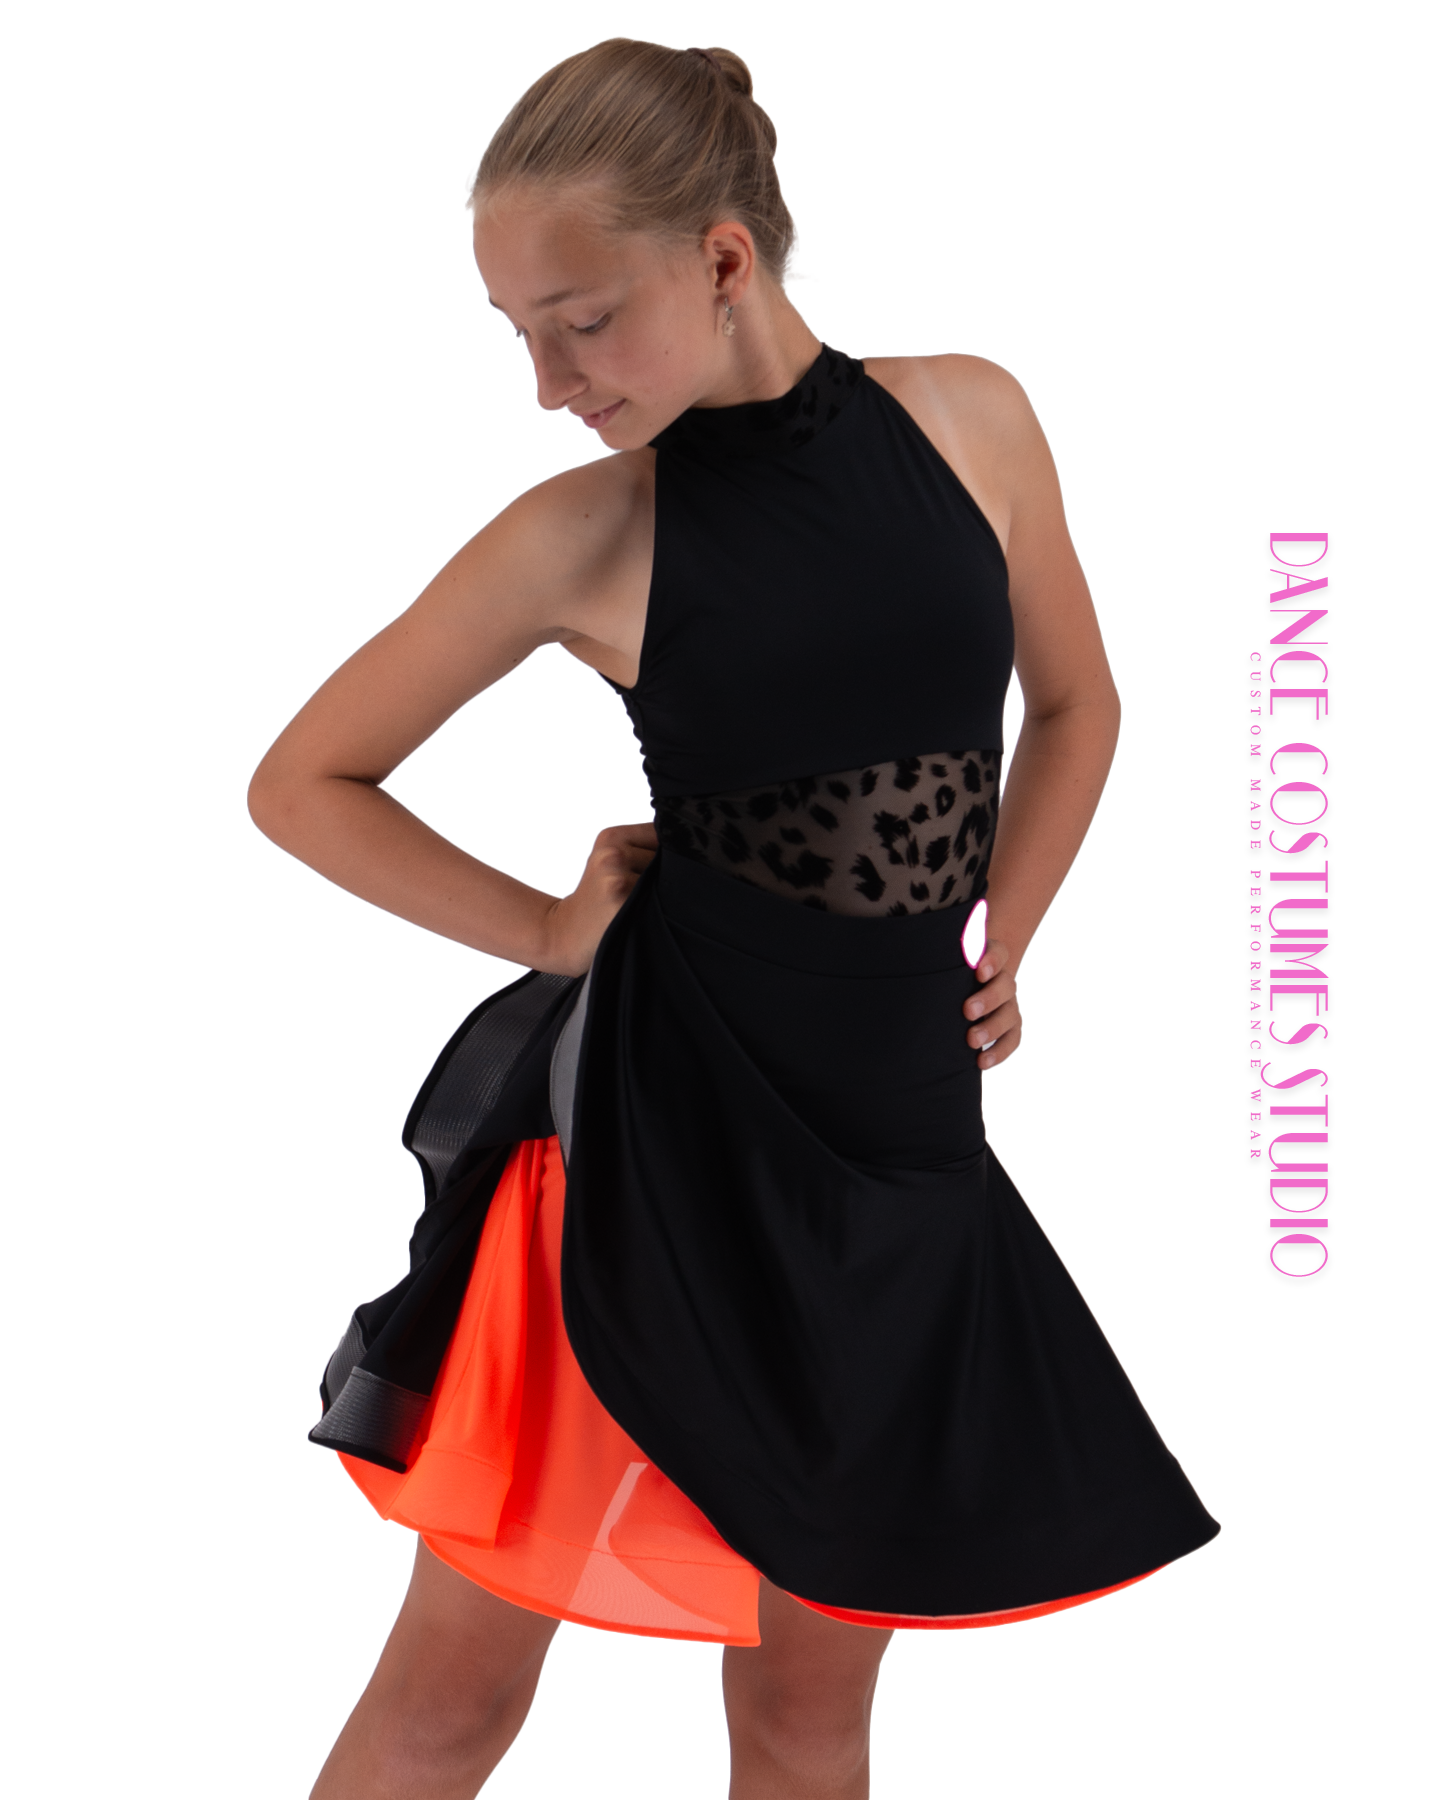 Dolly  Dance Skirt - Black and Orange